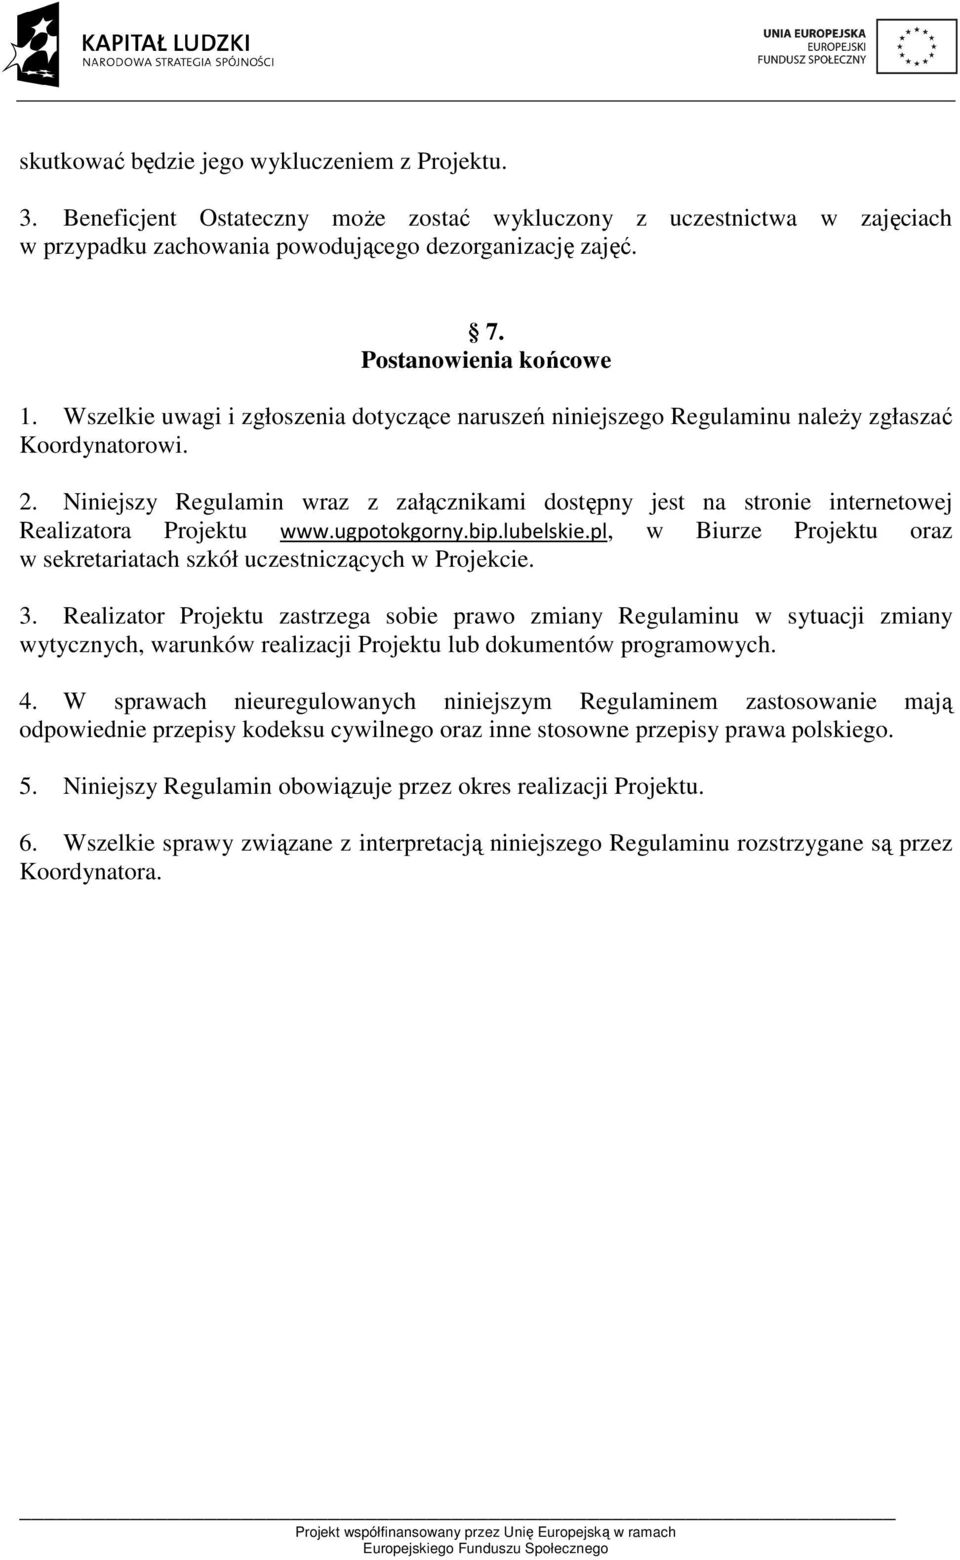 Niniejszy Regulamin wraz z załącznikami dostępny jest na stronie internetowej Realizatora Projektu www.ugpotokgorny.bip.lubelskie.